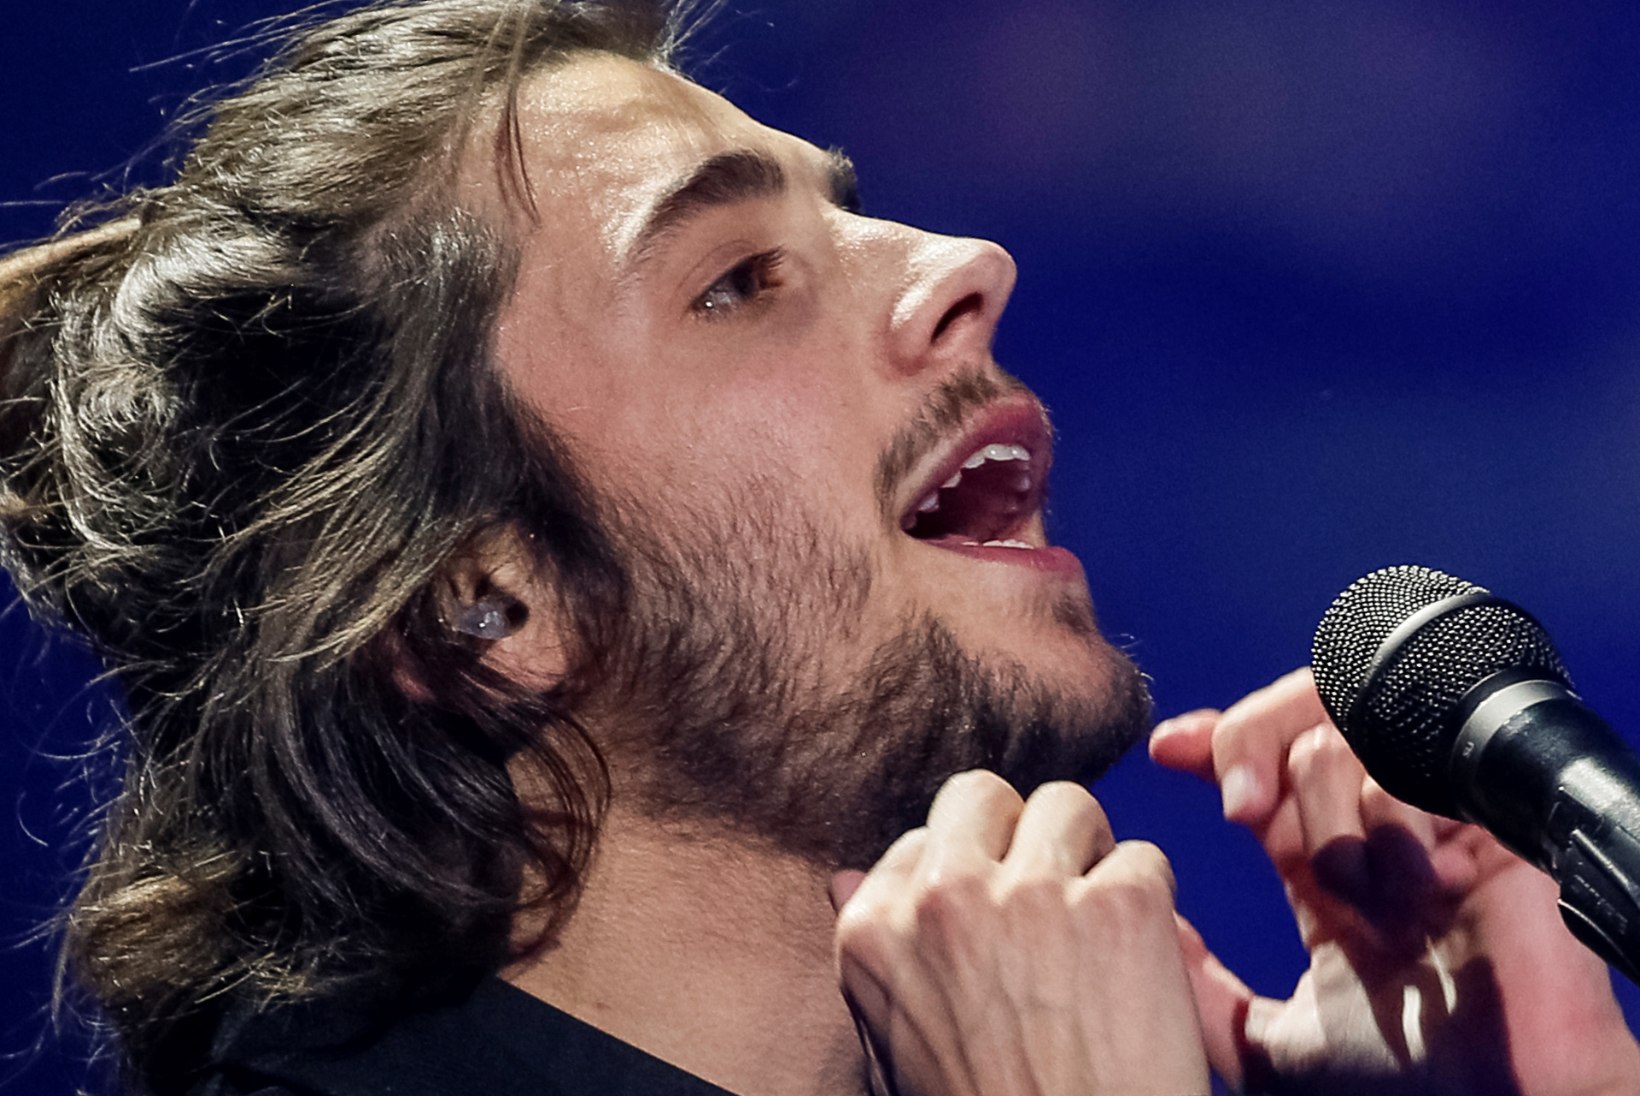 Eurovisioni võitjale Sobralile siirati uus süda